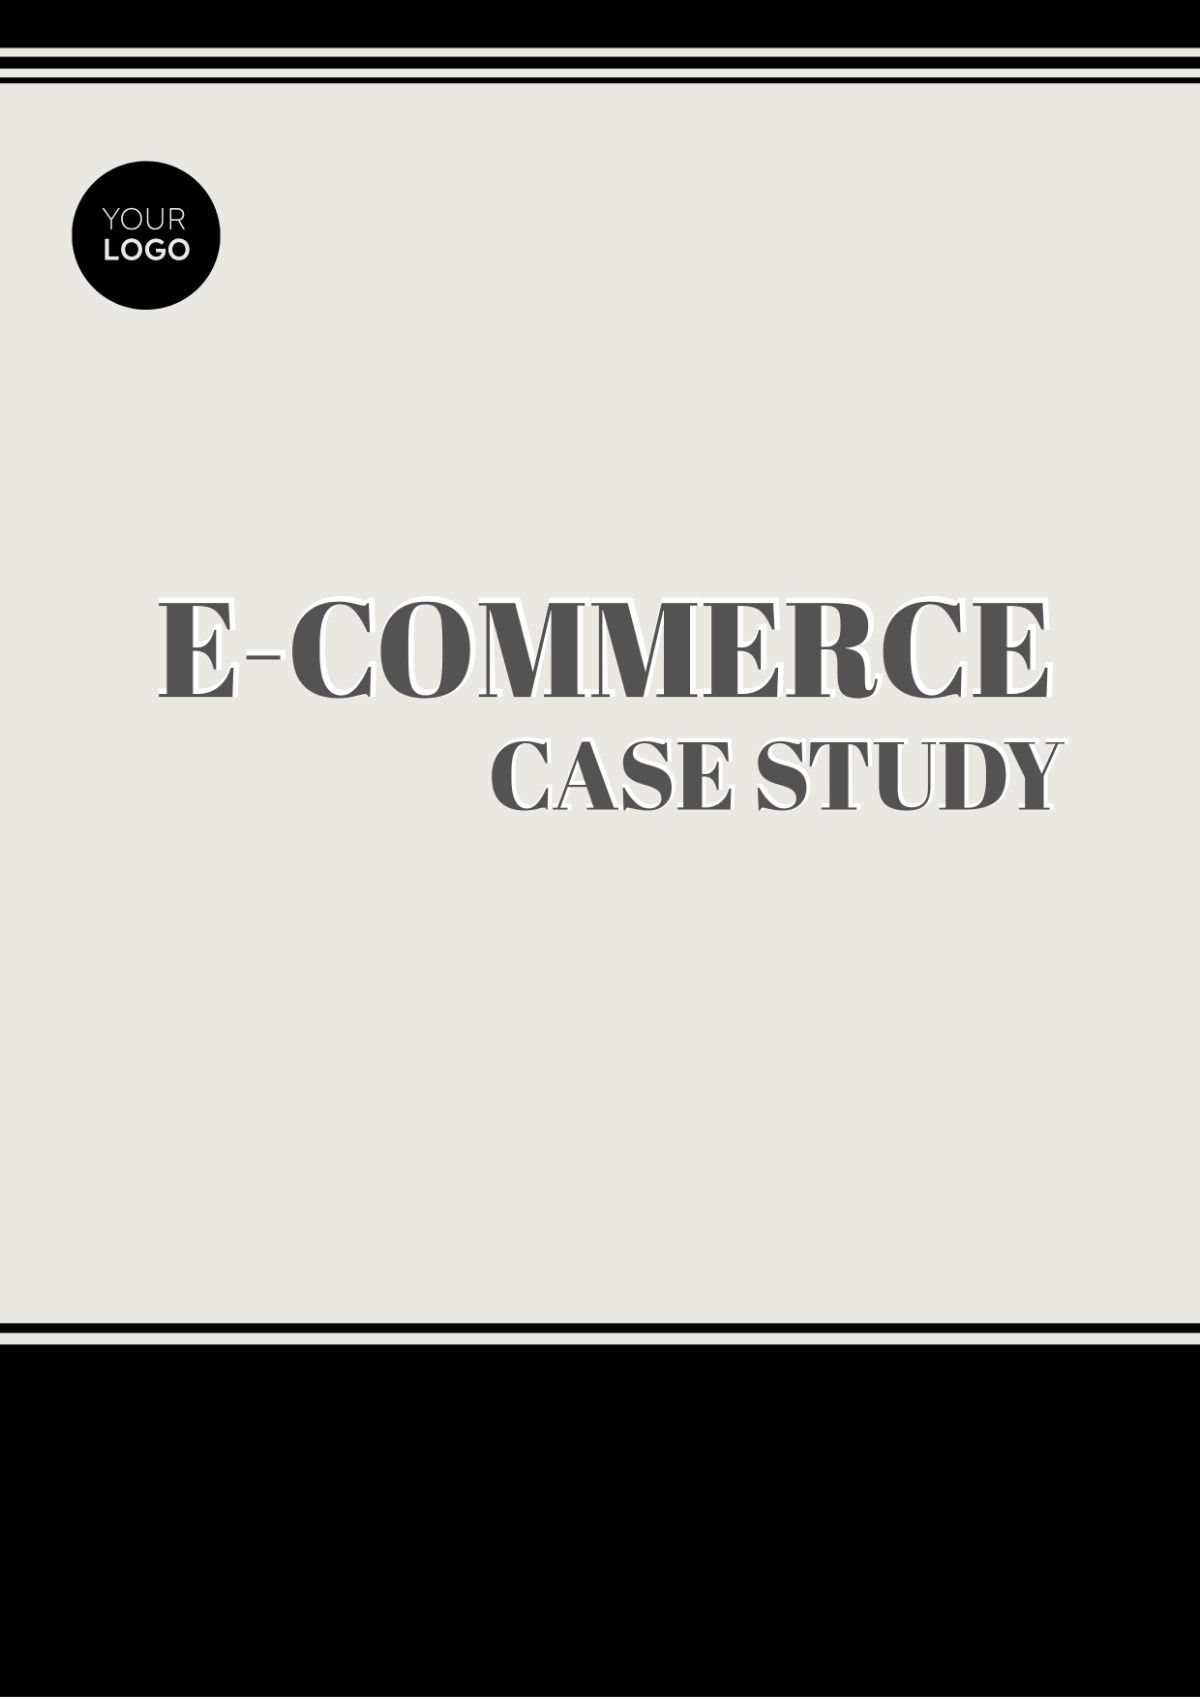 E-Commerce Case Study Template